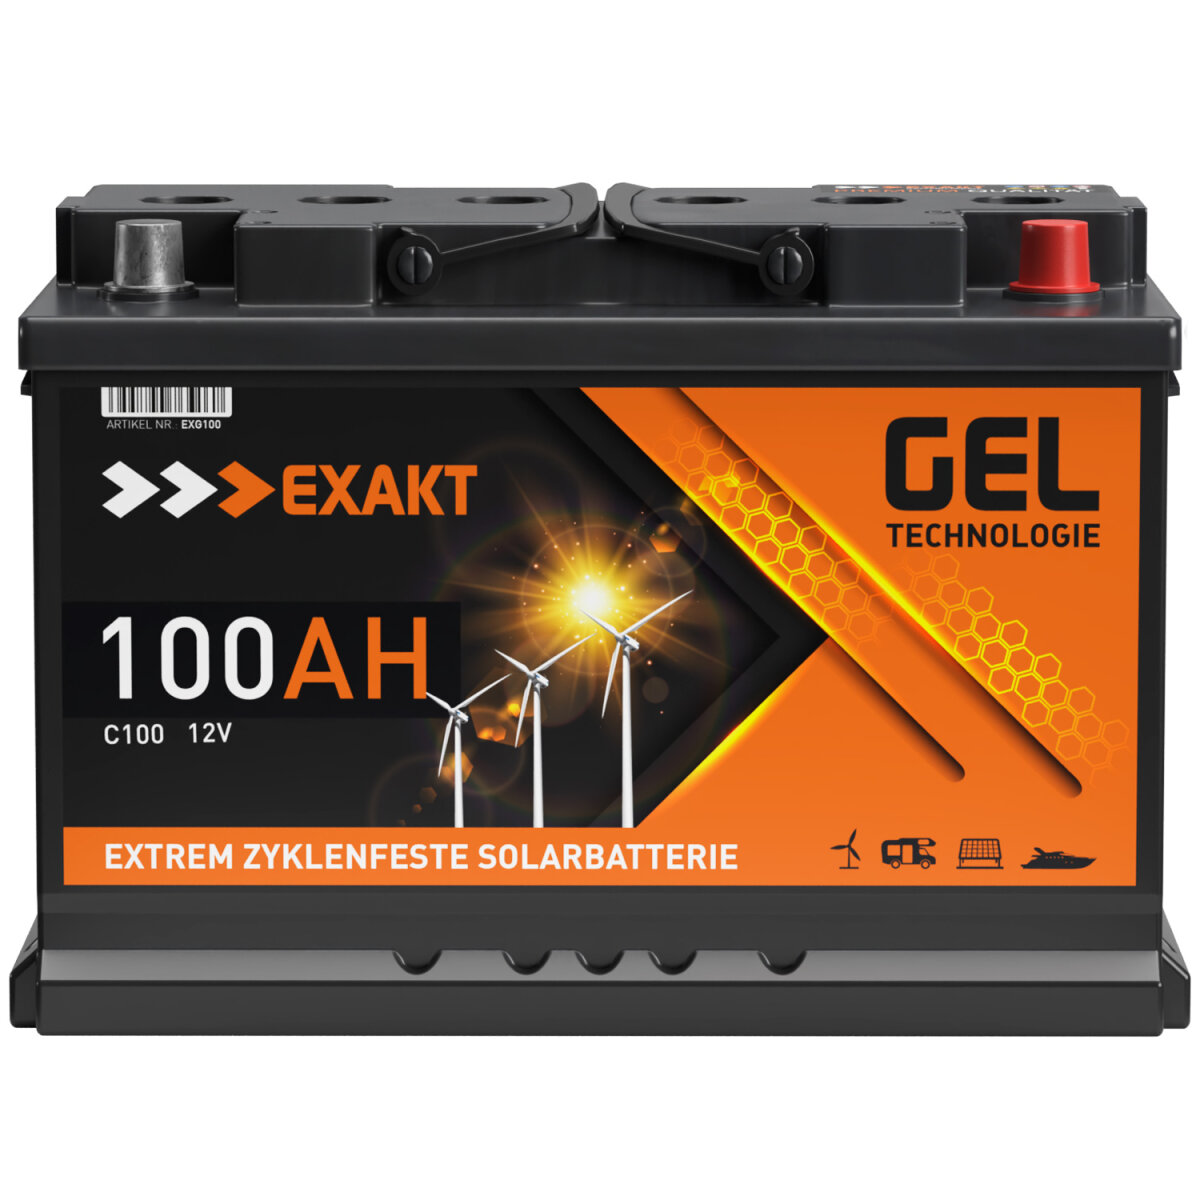 Solarbatterien GEL 12V/100Ah mit 1200 Wh Kapazität